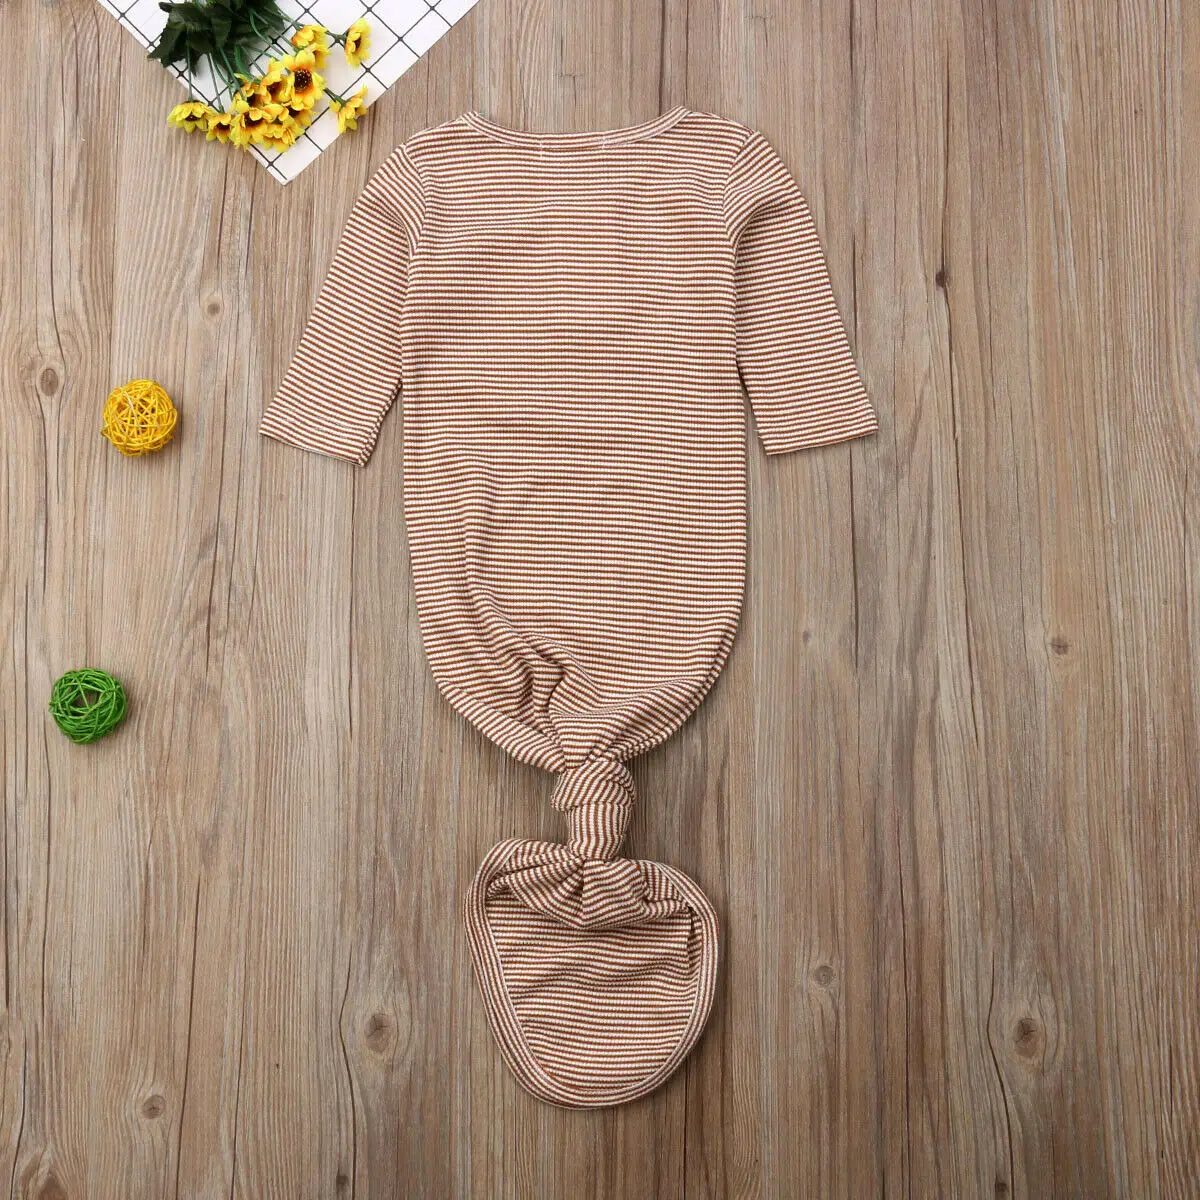 Детский конверт для новорожденного, Полосатое Пеленальное Одеяло, хлопковый спальный мешок для маленьких мальчиков и девочек, одежда для сна, мягкое муслиновое полотенце для детей 0-12 месяцев